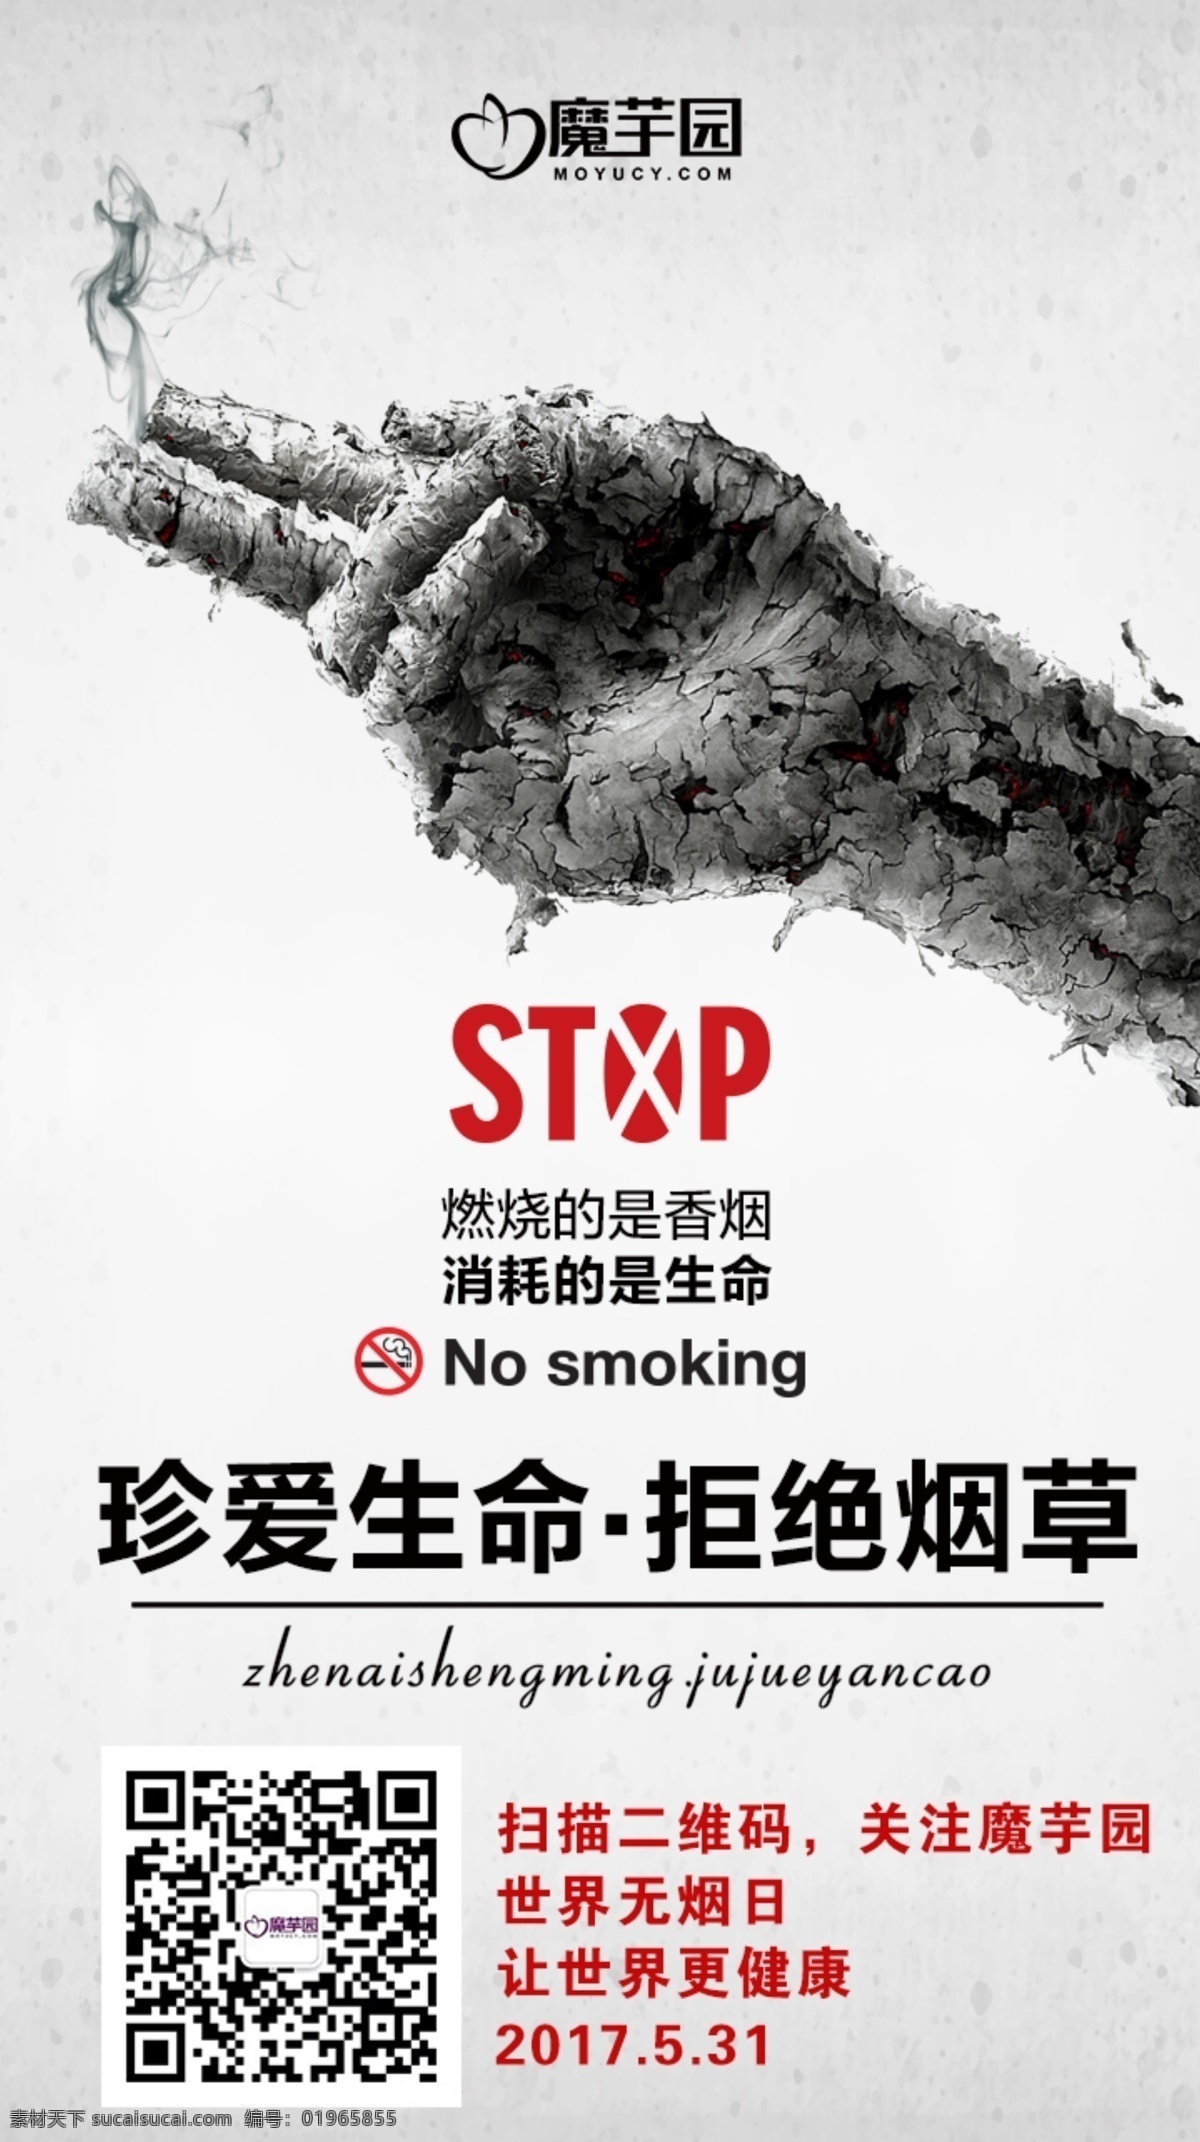 励志 公益 正 能量 拒绝 抽烟 烟草 灰色 背景 海报 正能量 拒绝烟草 珍爱生命 抽烟有害健康 stop